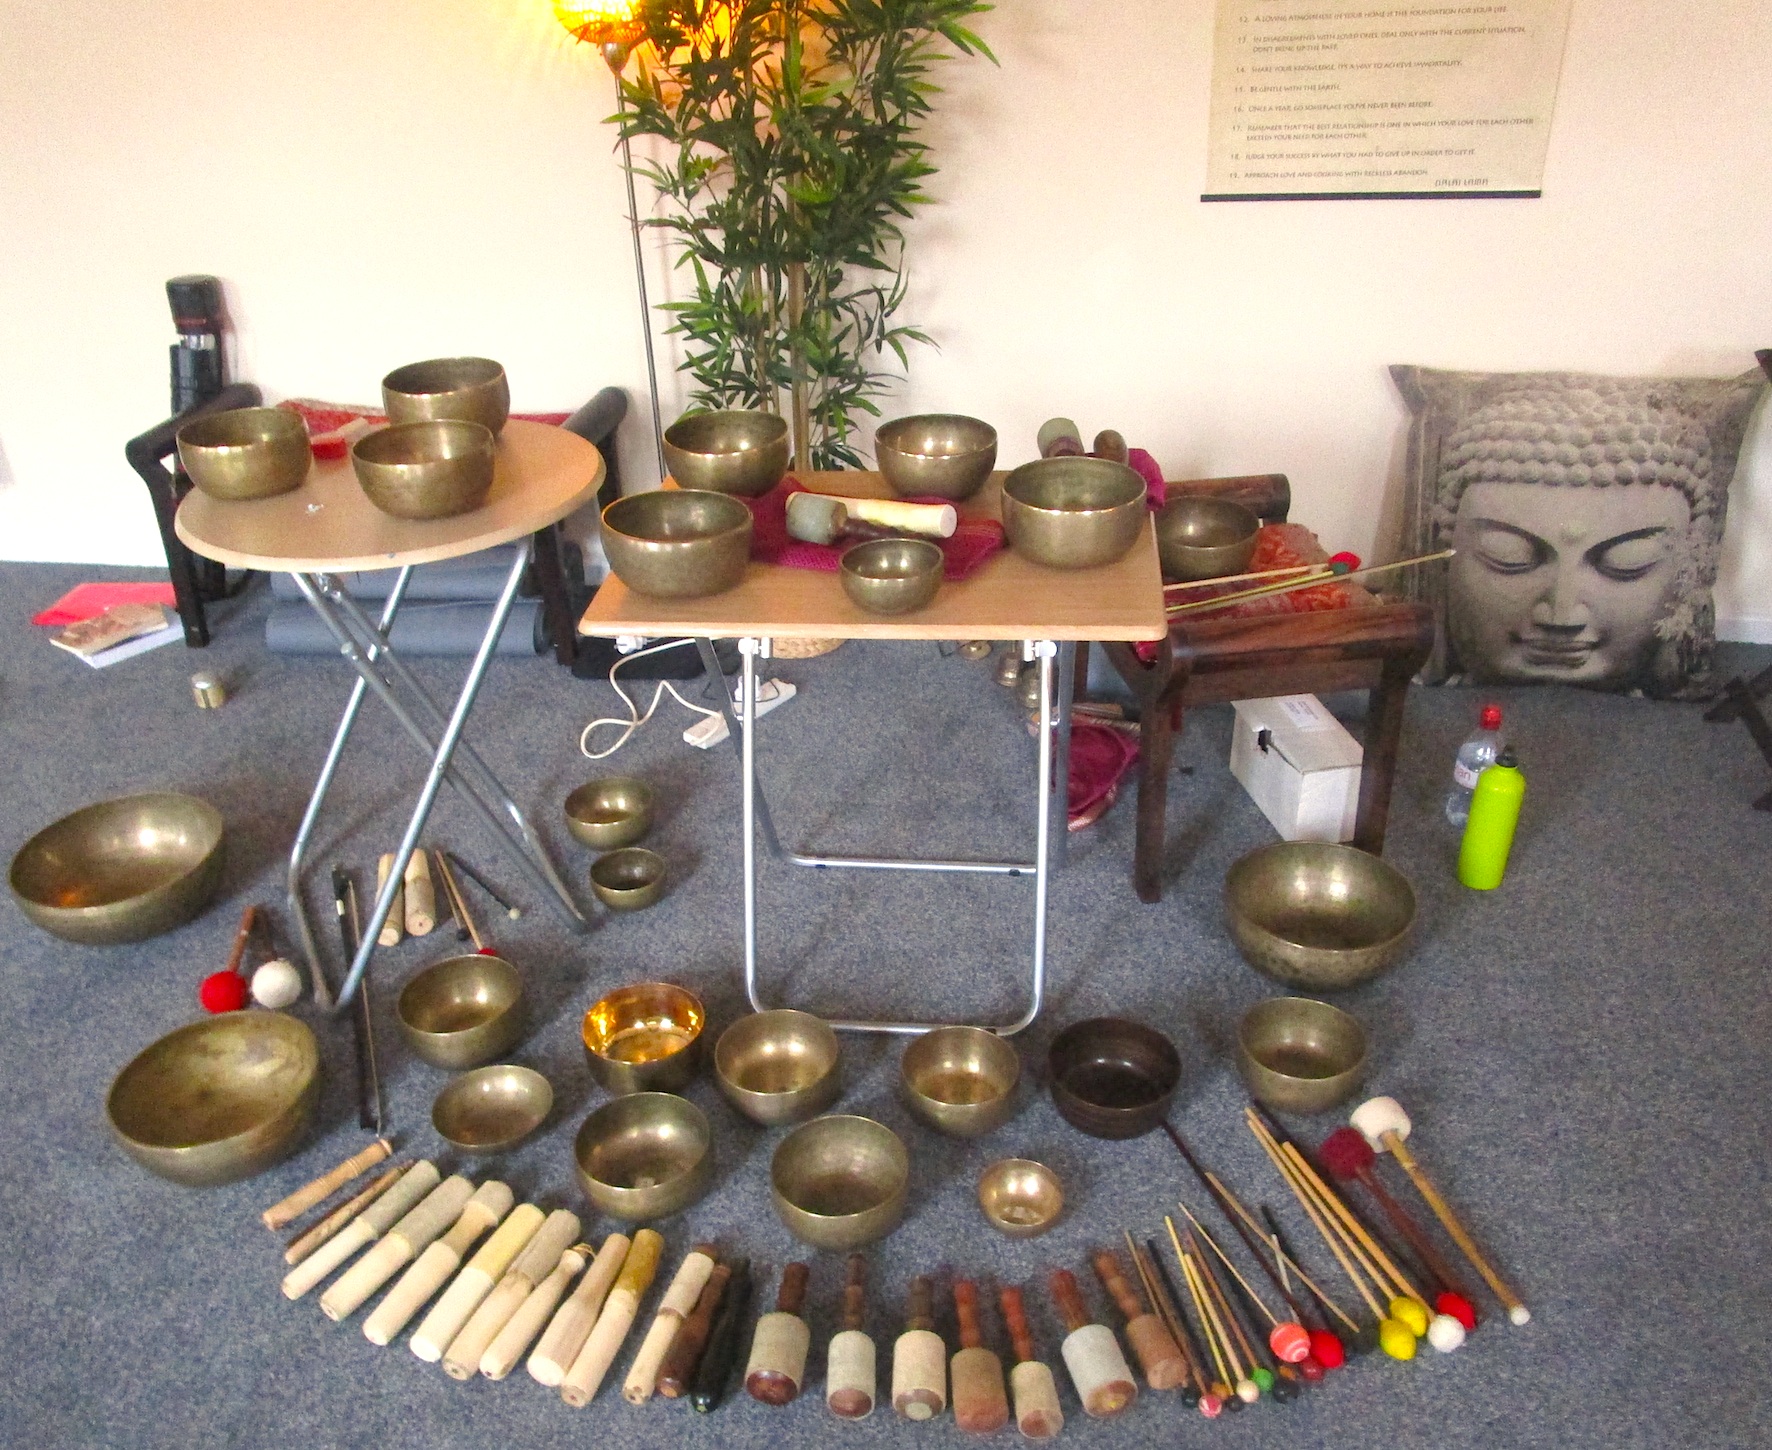 FROME, SOMERSET - Tibetan Singing Bowl Workshop Part 1